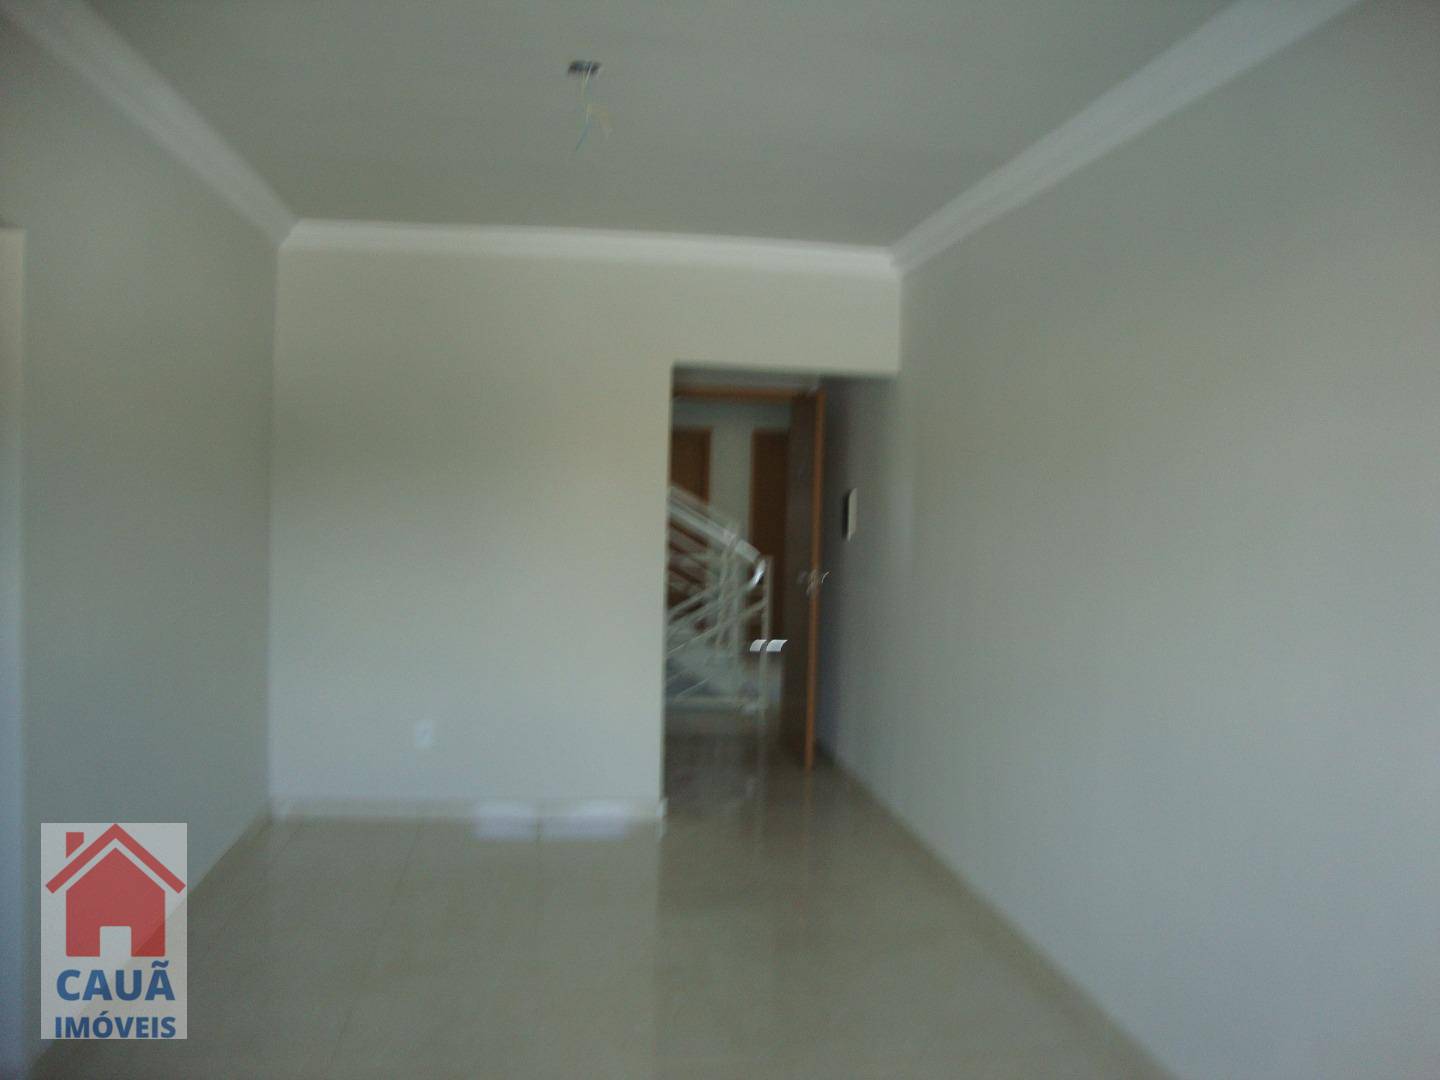 Apartamento, 2 quartos, 73 m² - Foto 2